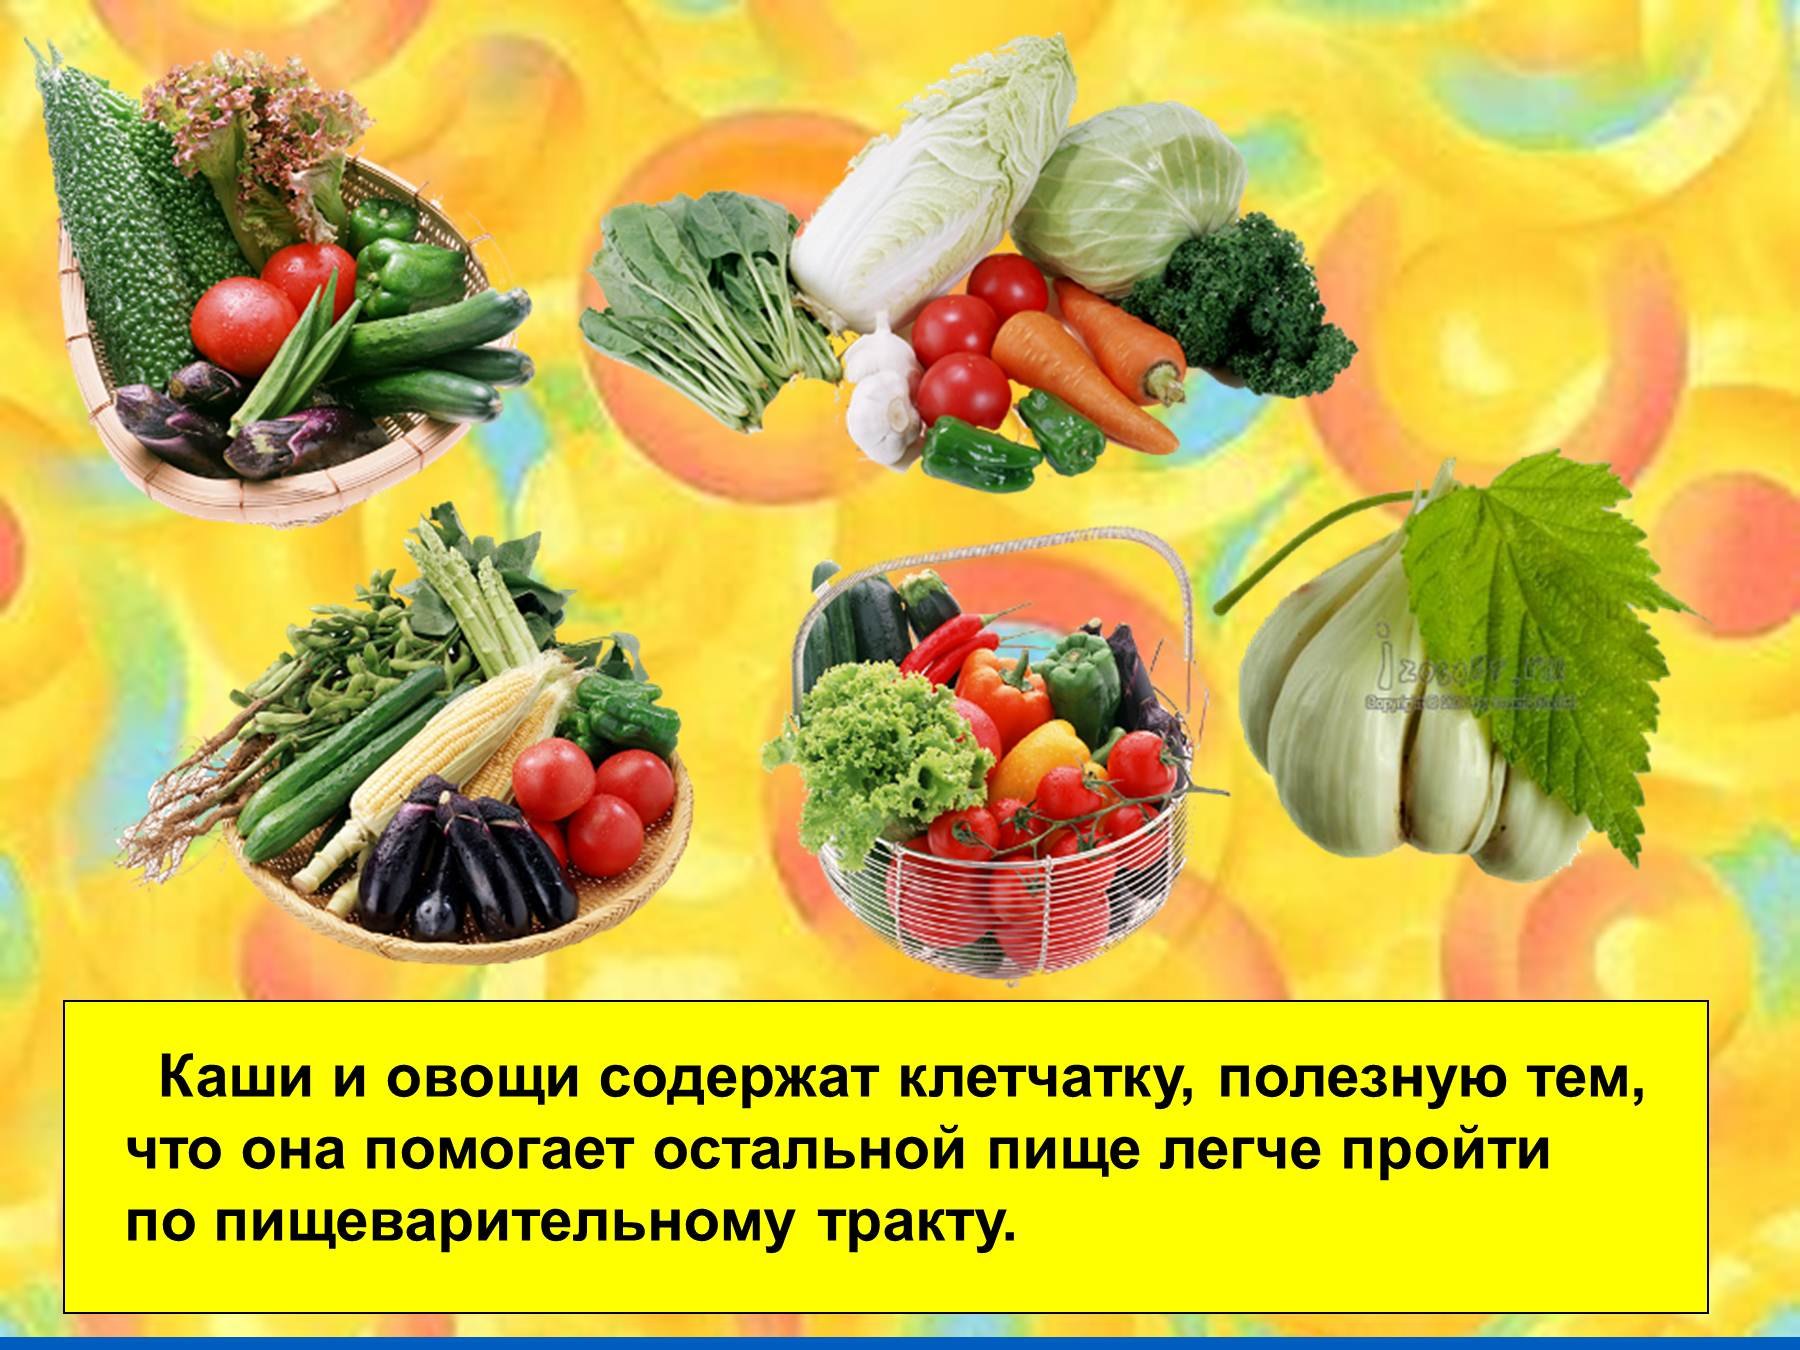 польза овощей и фруктов картинки для детей